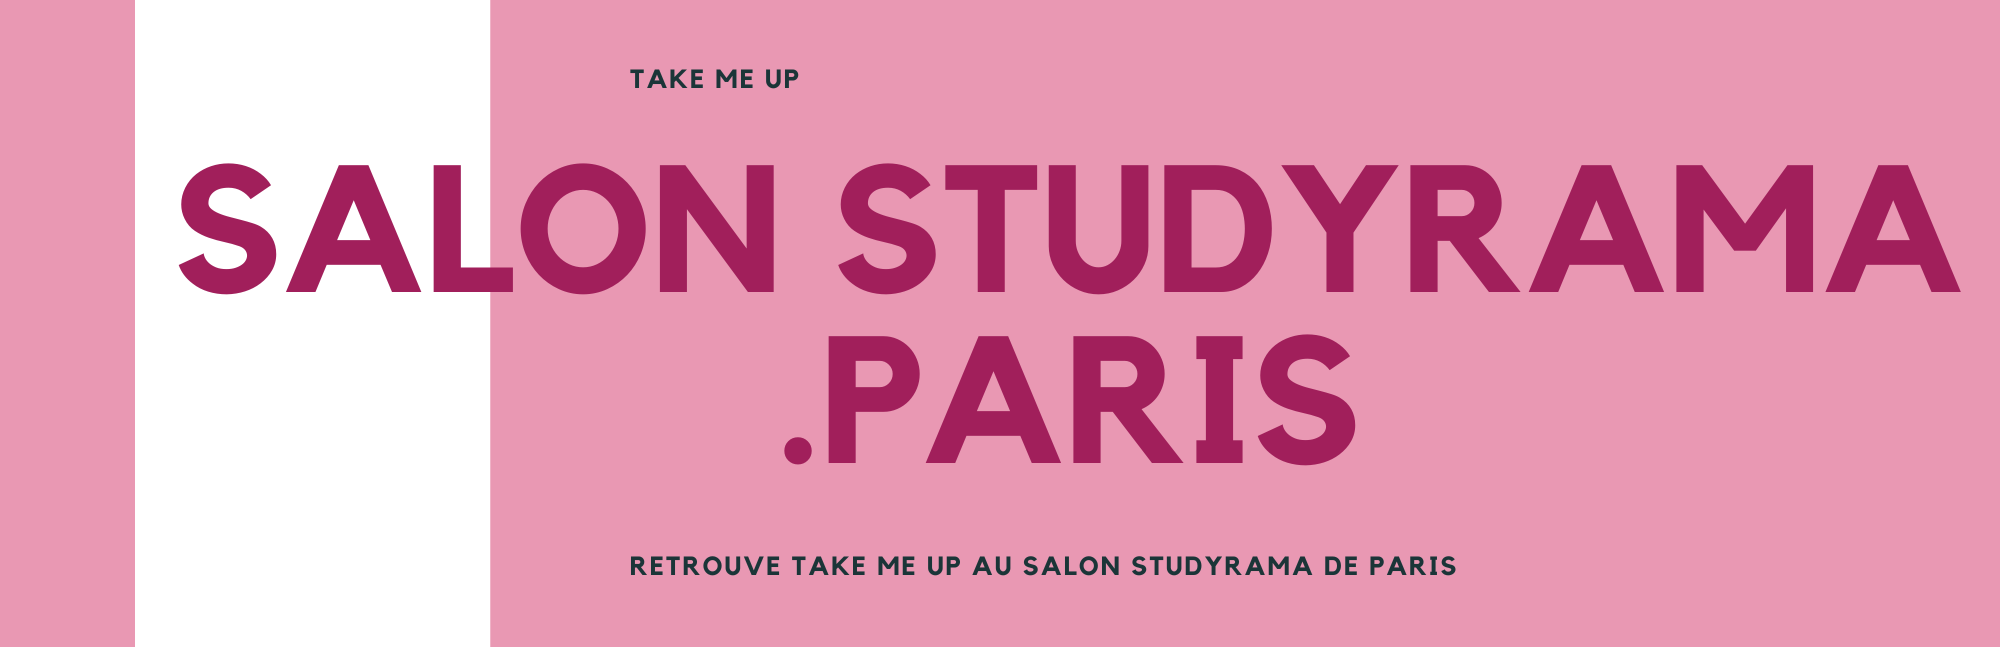 Headers Salon Studyrama Paris